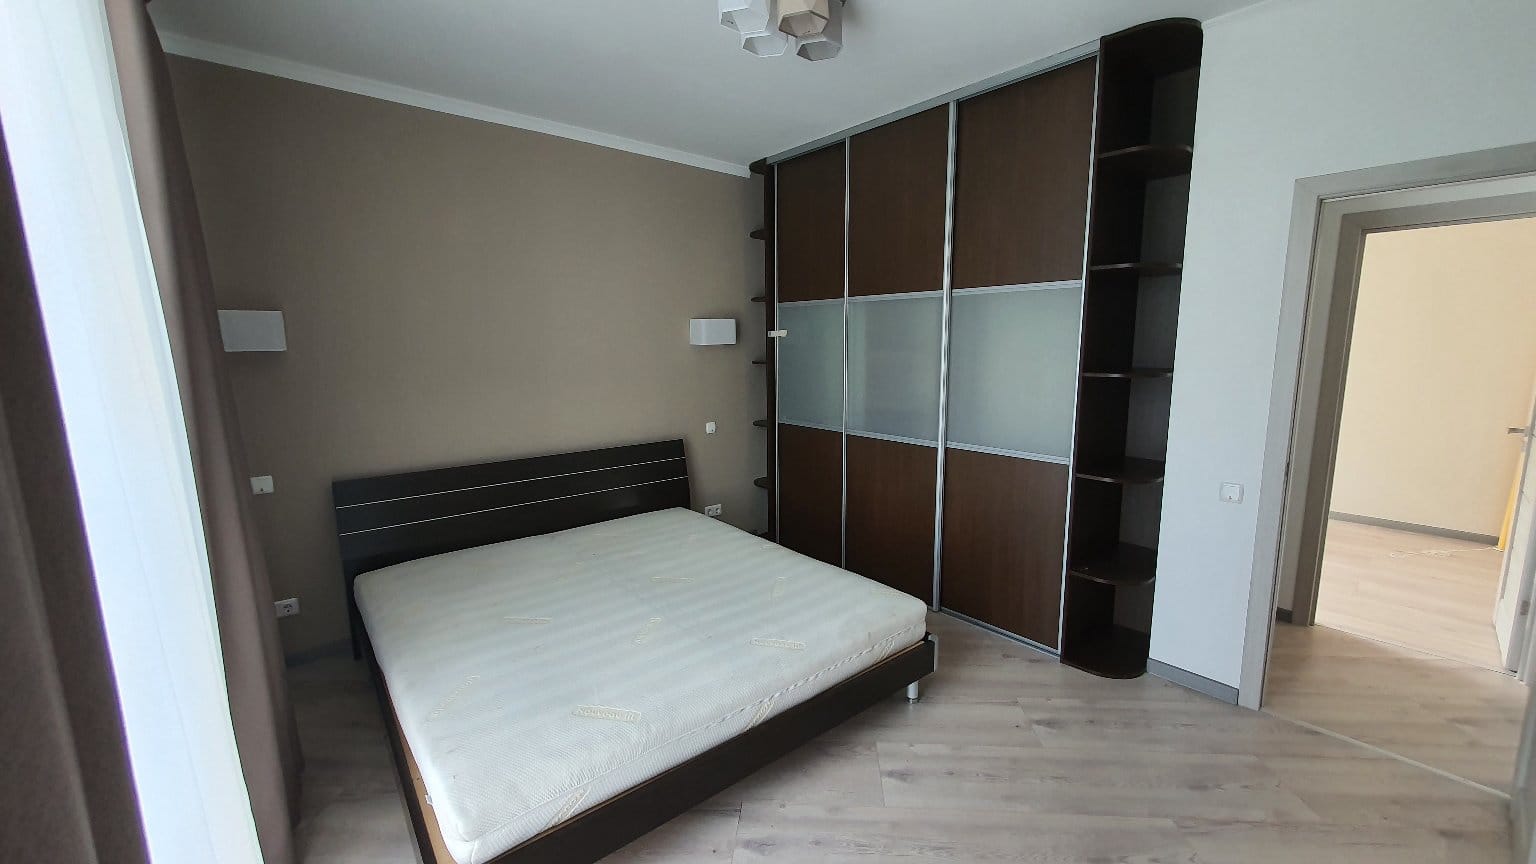 Apartment for sale, Buļļu street 33 - Image 1